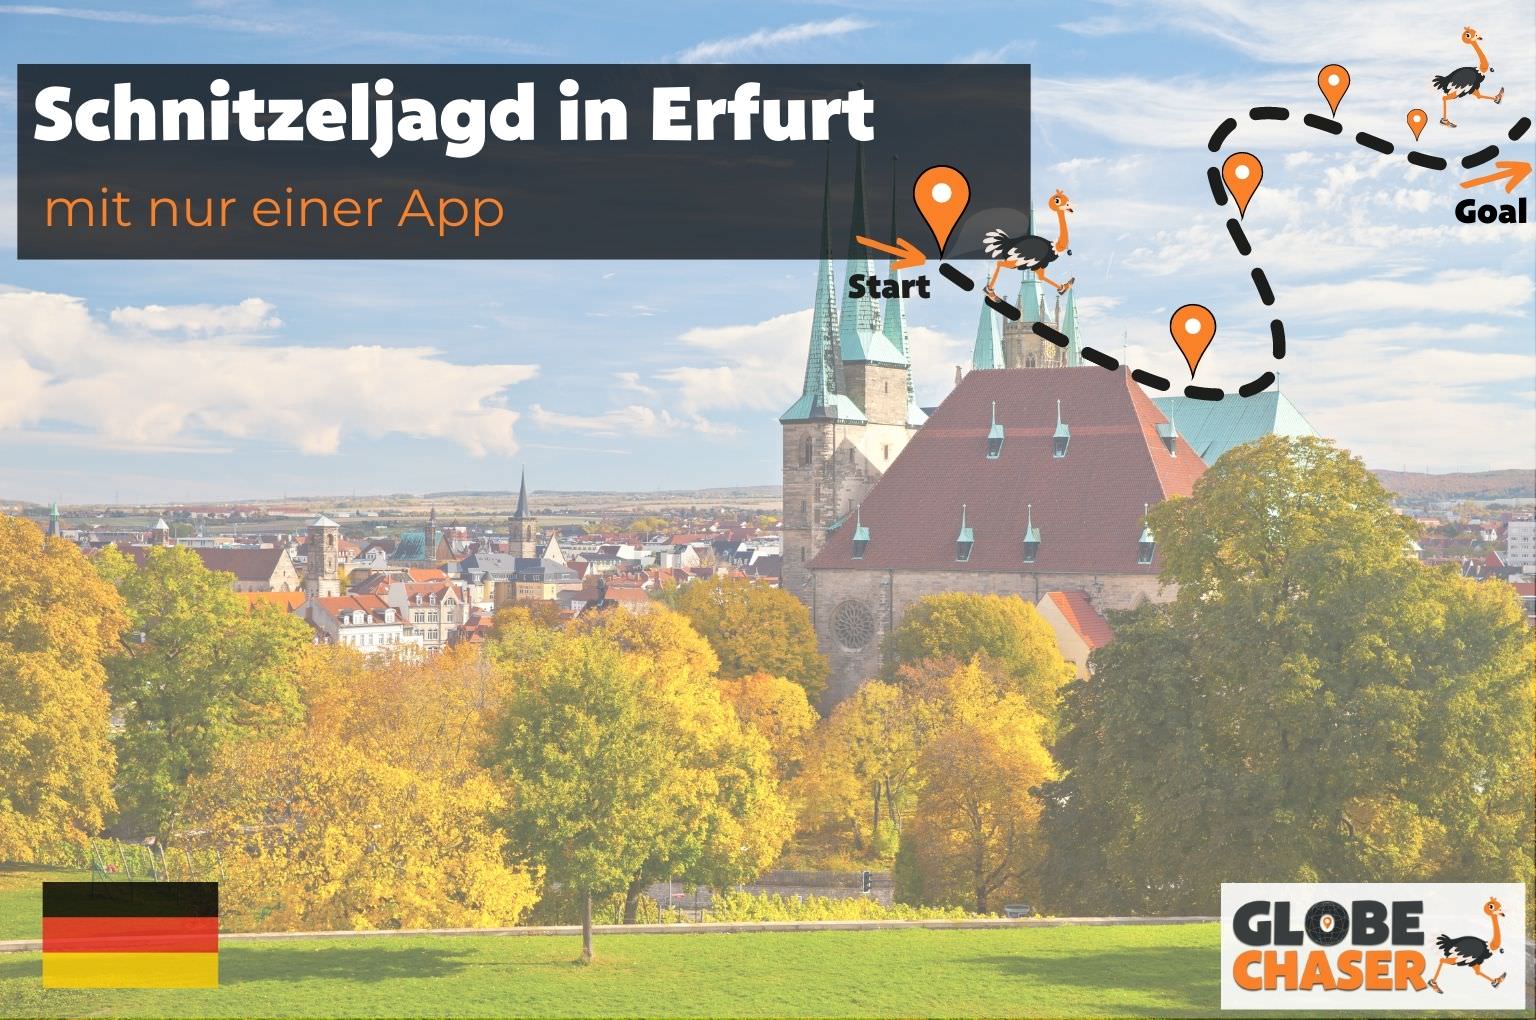 Schnitzeljagd in Erfurt mit App - Globe Chaser Erlebnisse Deutschland